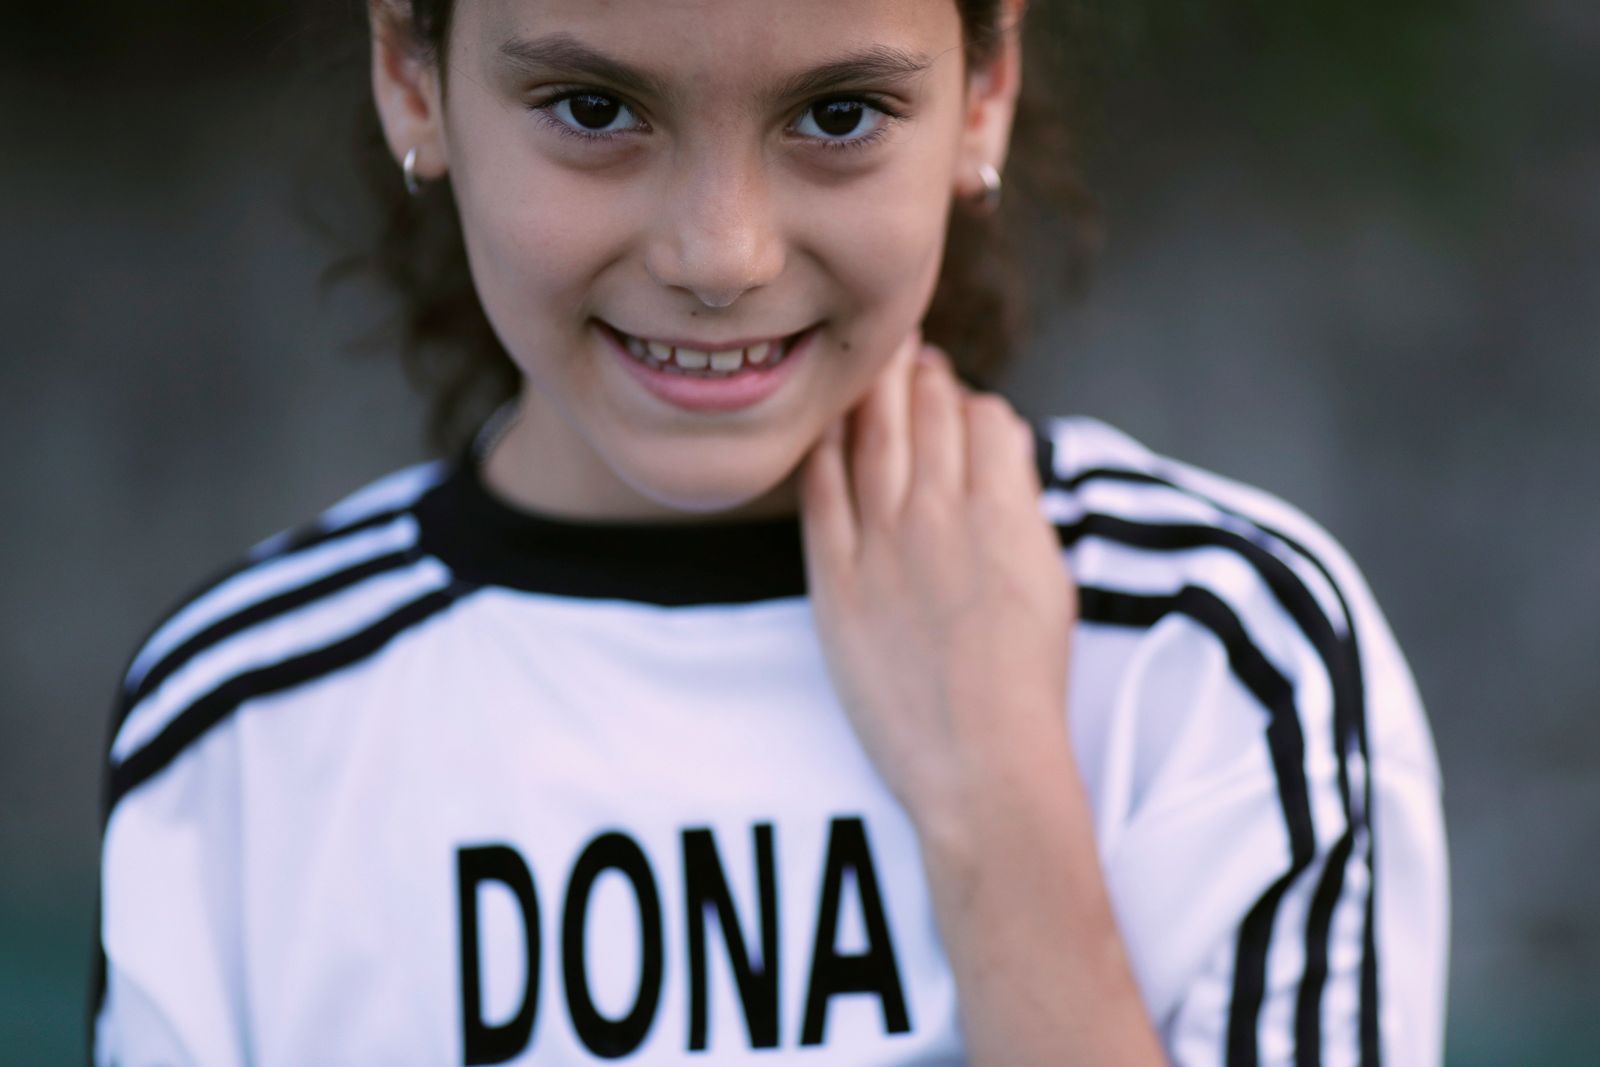 الطفلة الأرجنتينية دونا، ترتدي القميص رقم 10 المفضل للاعب الراحل مارادونا - REUTERS